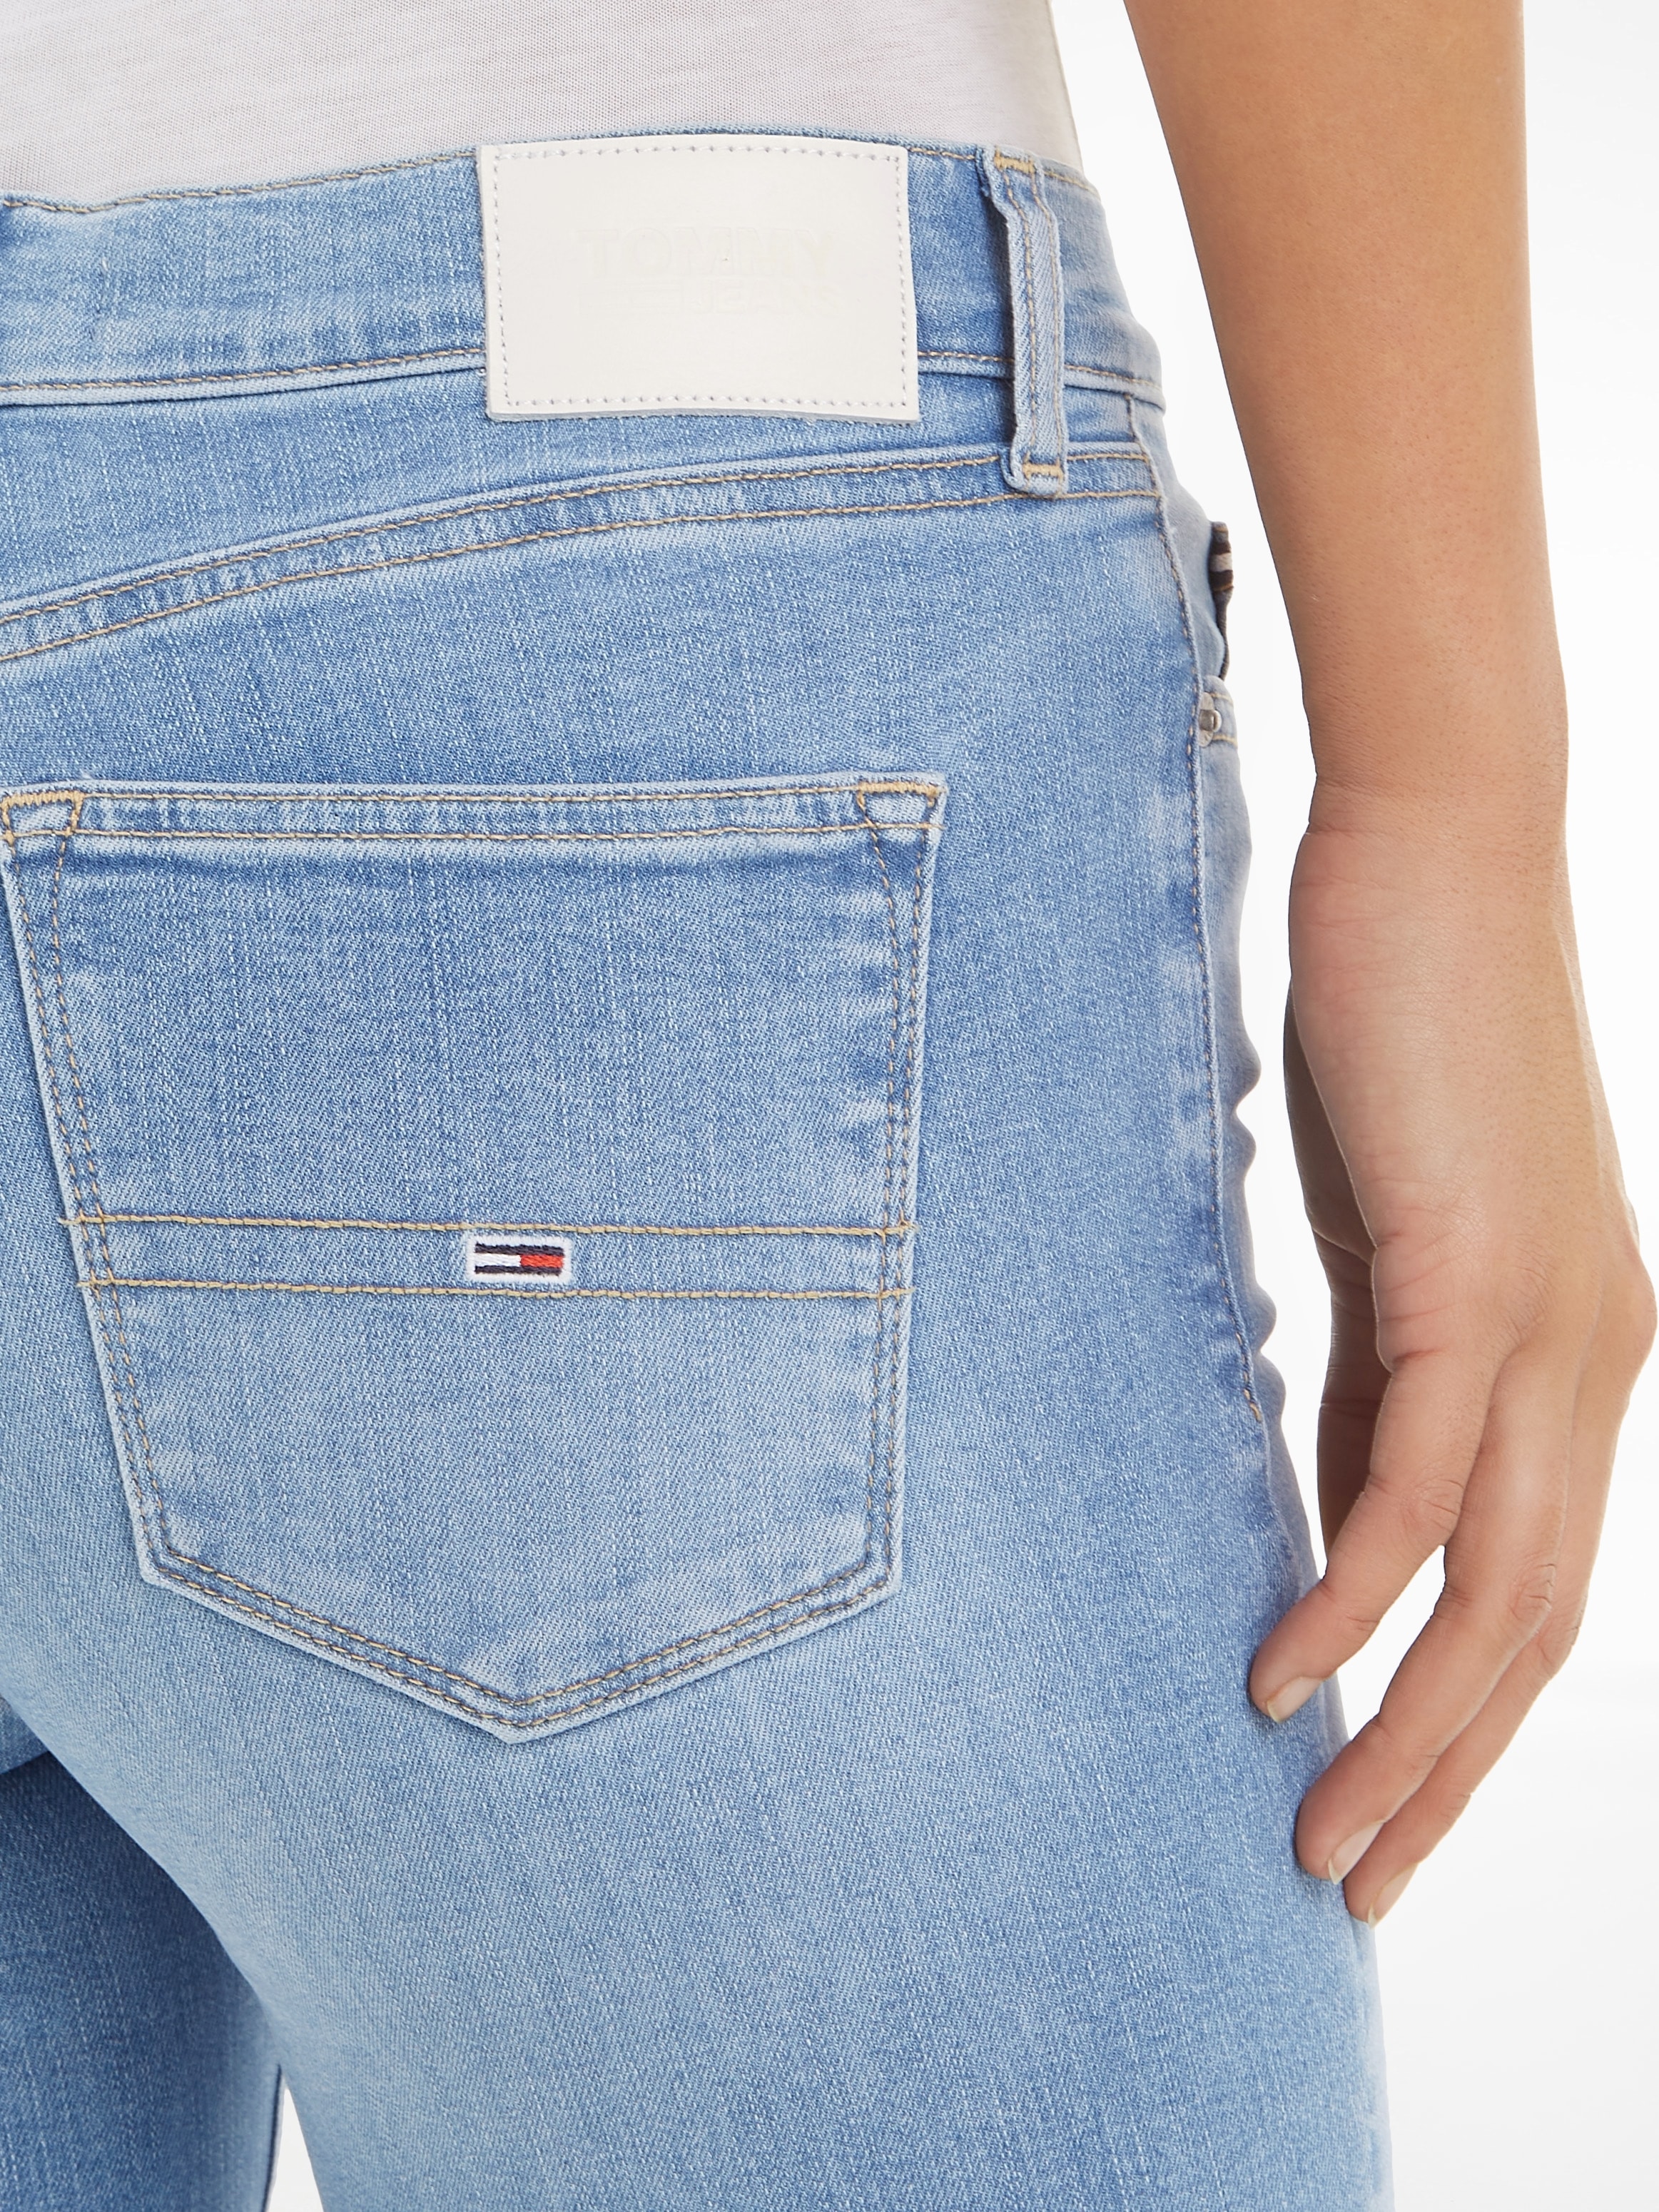 dezenten Tommy mit Skinny-fit-Jeans, Jeans Labelapplikationen shoppen